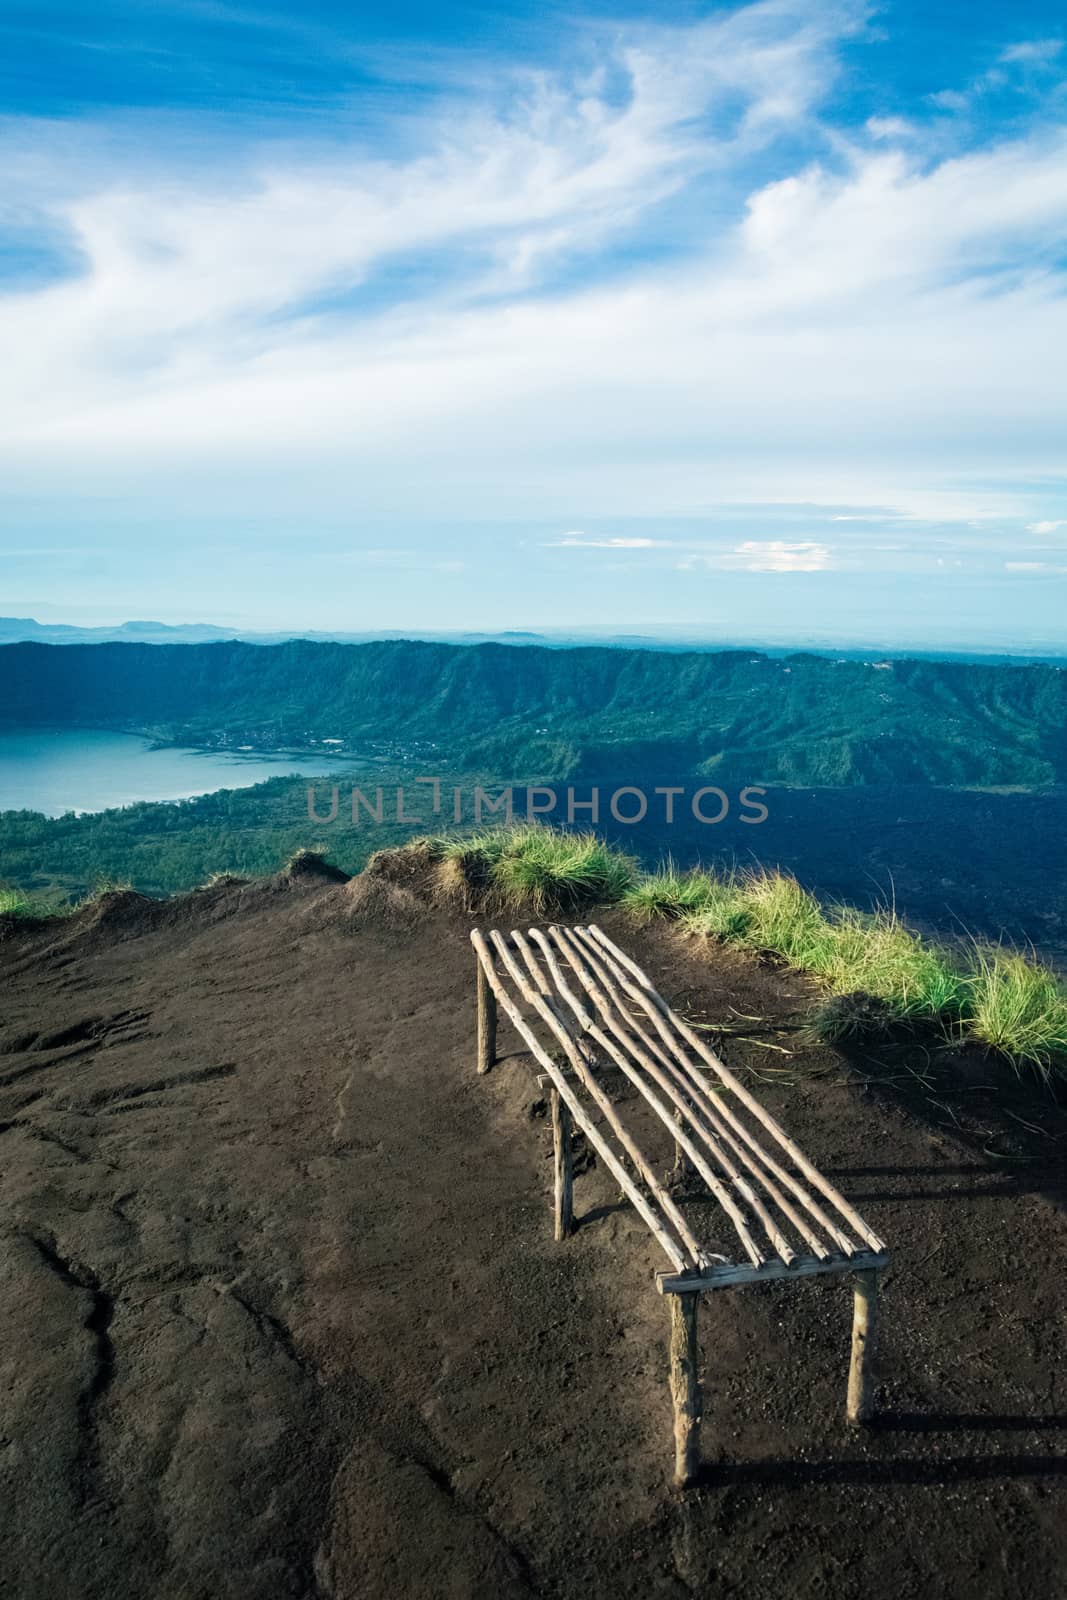 A view from Gunung Agung Volcano and Lake Danau Batur, Bali, Indonesia.